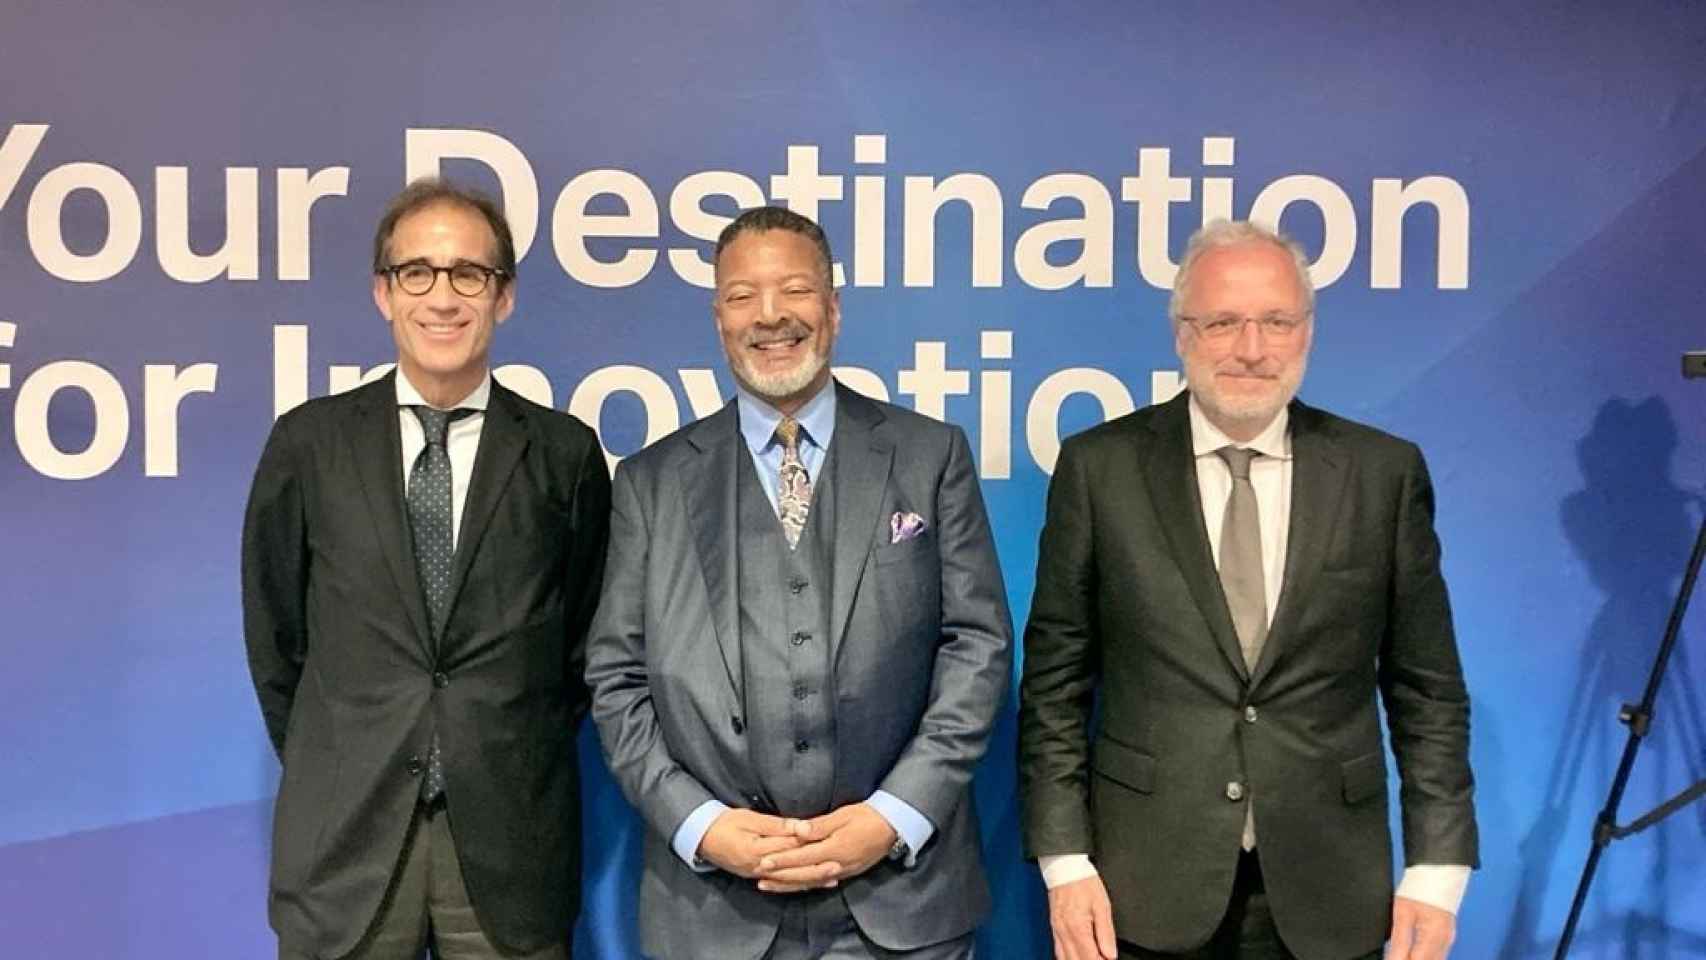 El director general de ISE, Mike Blackman, junto al presidente y el director general de Fira de Barcelona, Pau Relat y Constantí Serrallonga